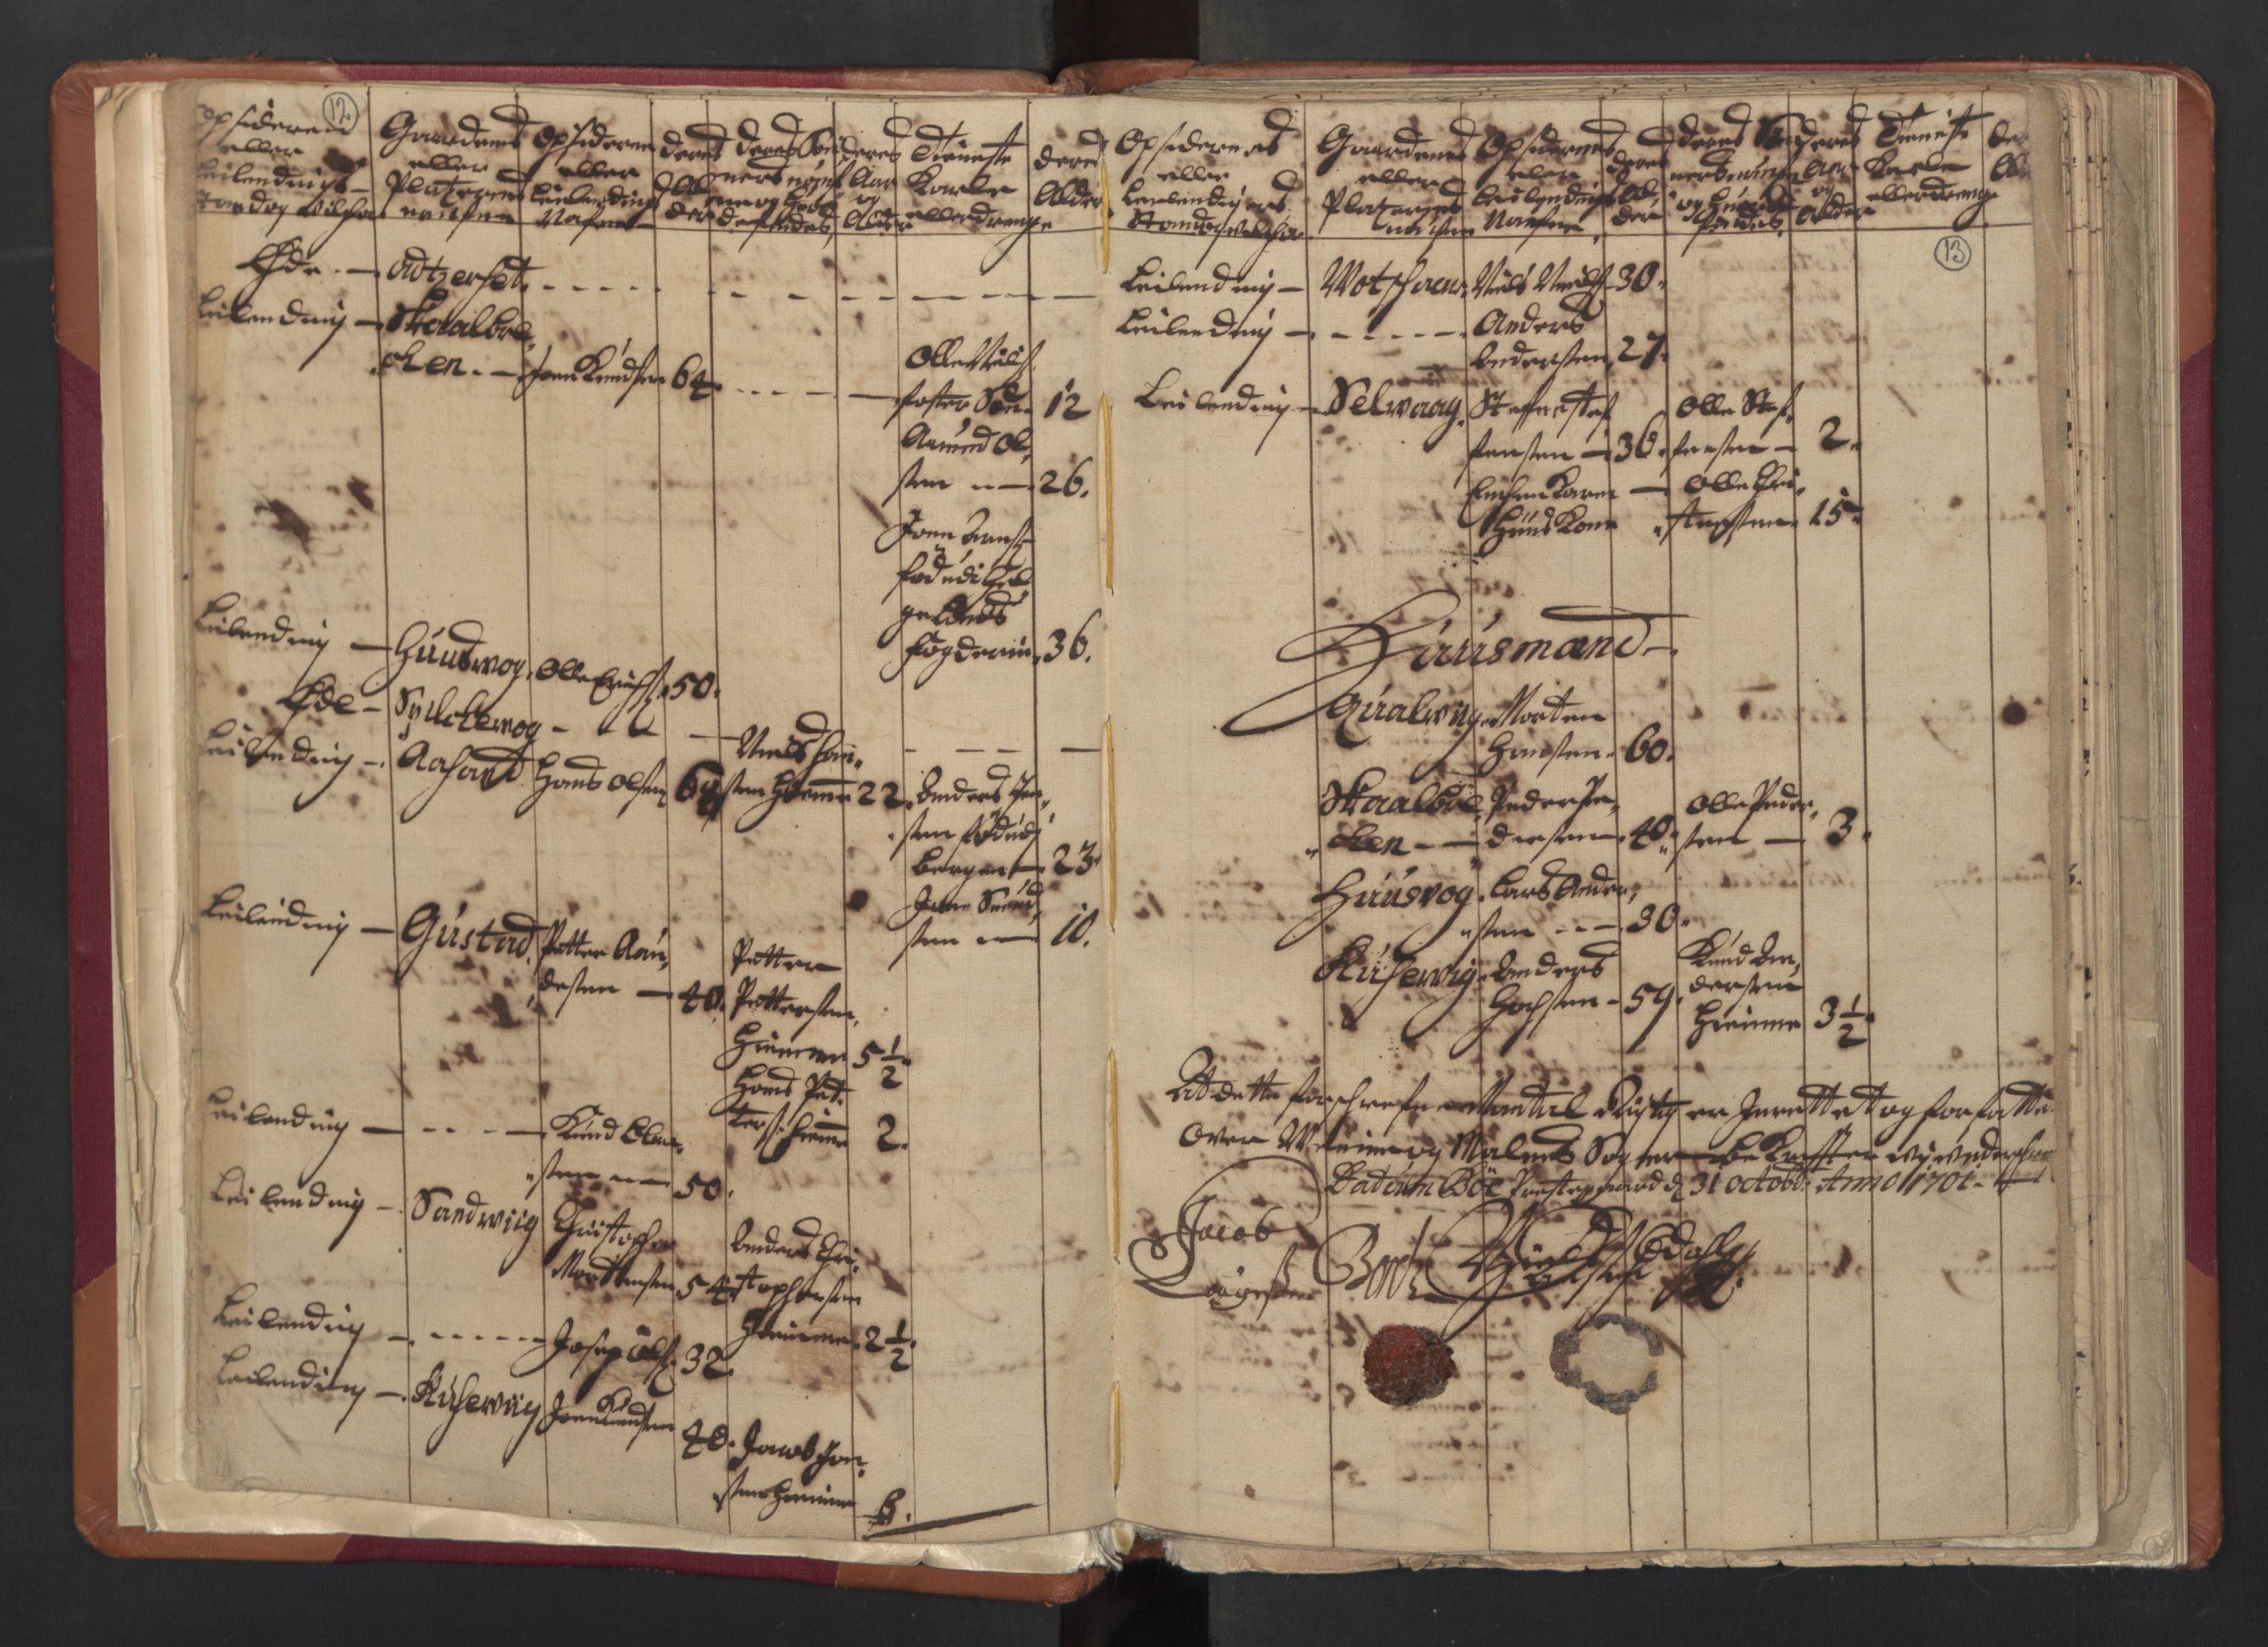 RA, Census (manntall) 1701, no. 18: Vesterålen, Andenes and Lofoten fogderi, 1701, p. 12-13